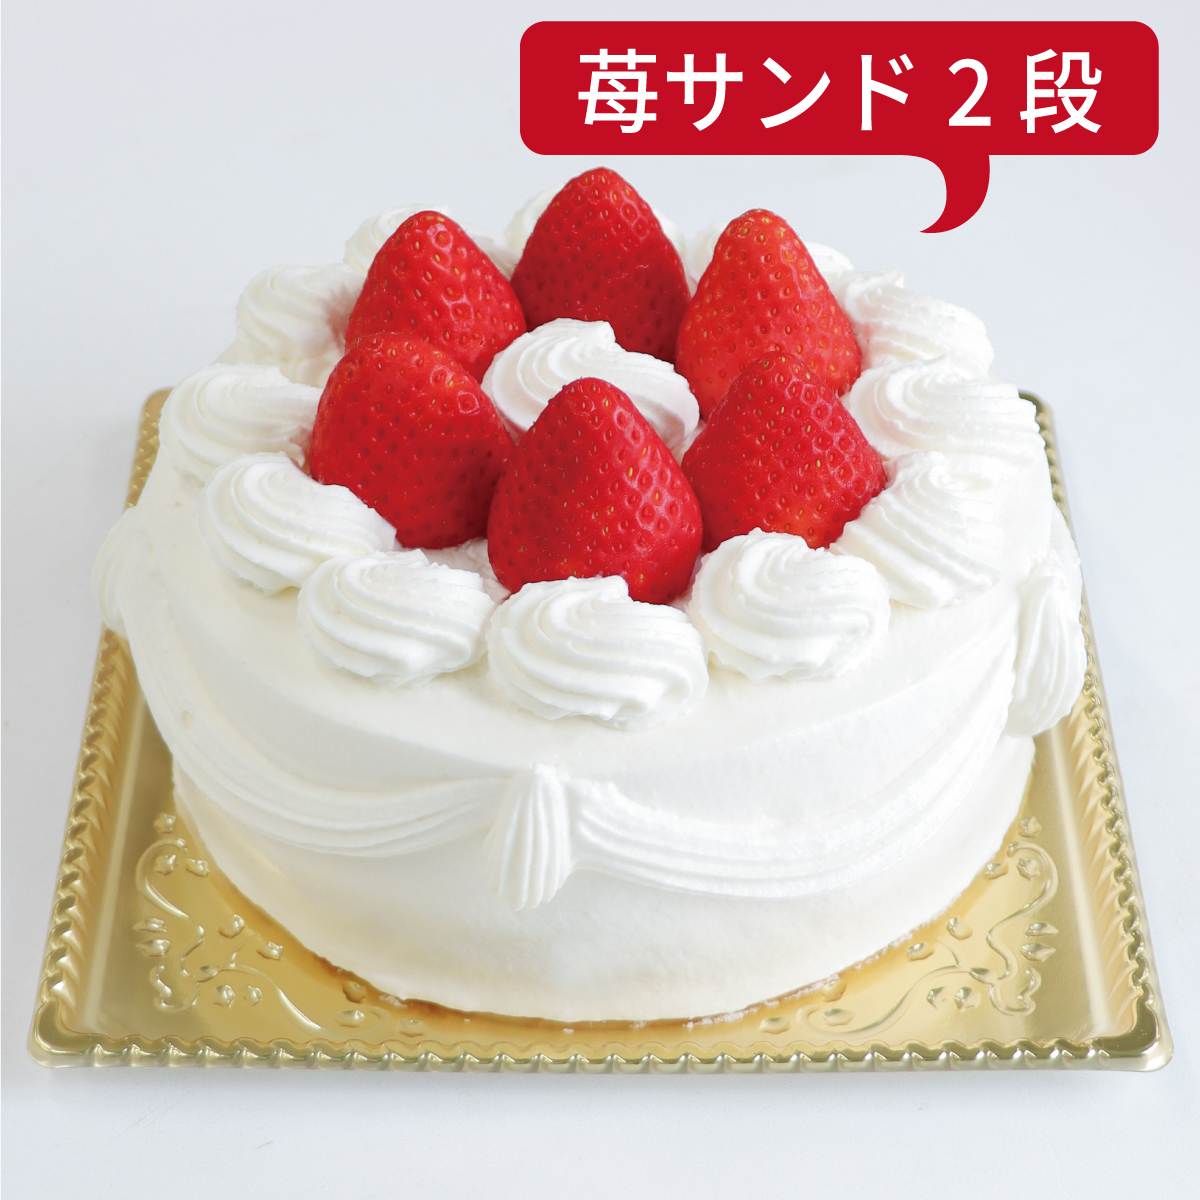 【ダブル】いちごデコレーションケーキ<12cm>